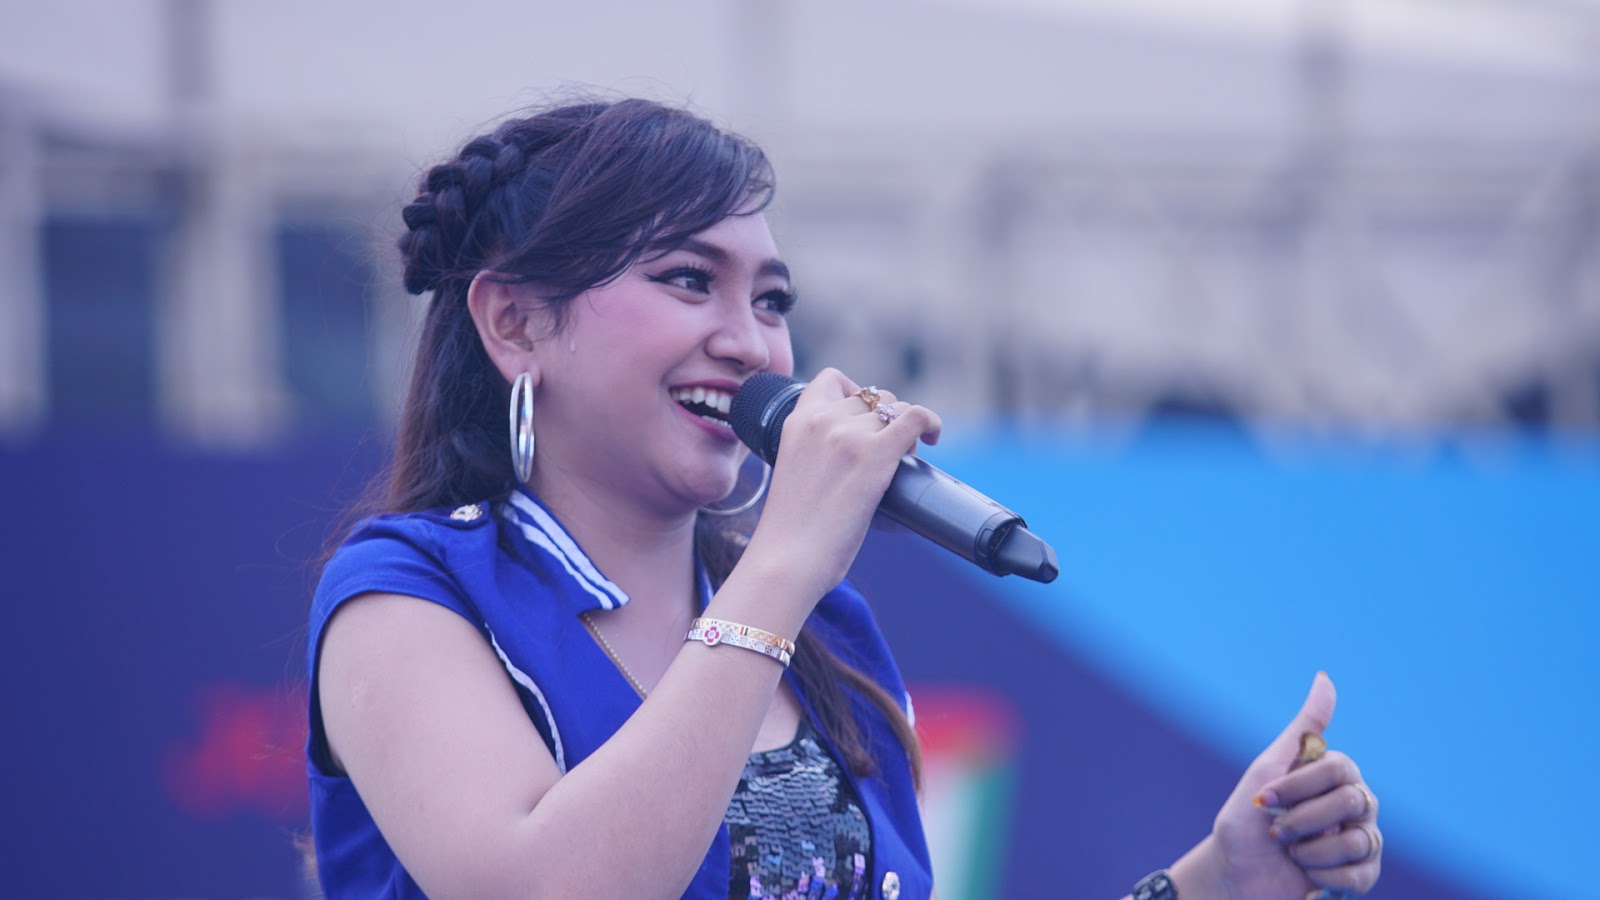 Penyanyi dangdut Jihan Audy yang sangat digemari oleh kaum milenial dengan judul lagunya Prei Kanan Kiri: Sumber | D'zen kreatif media